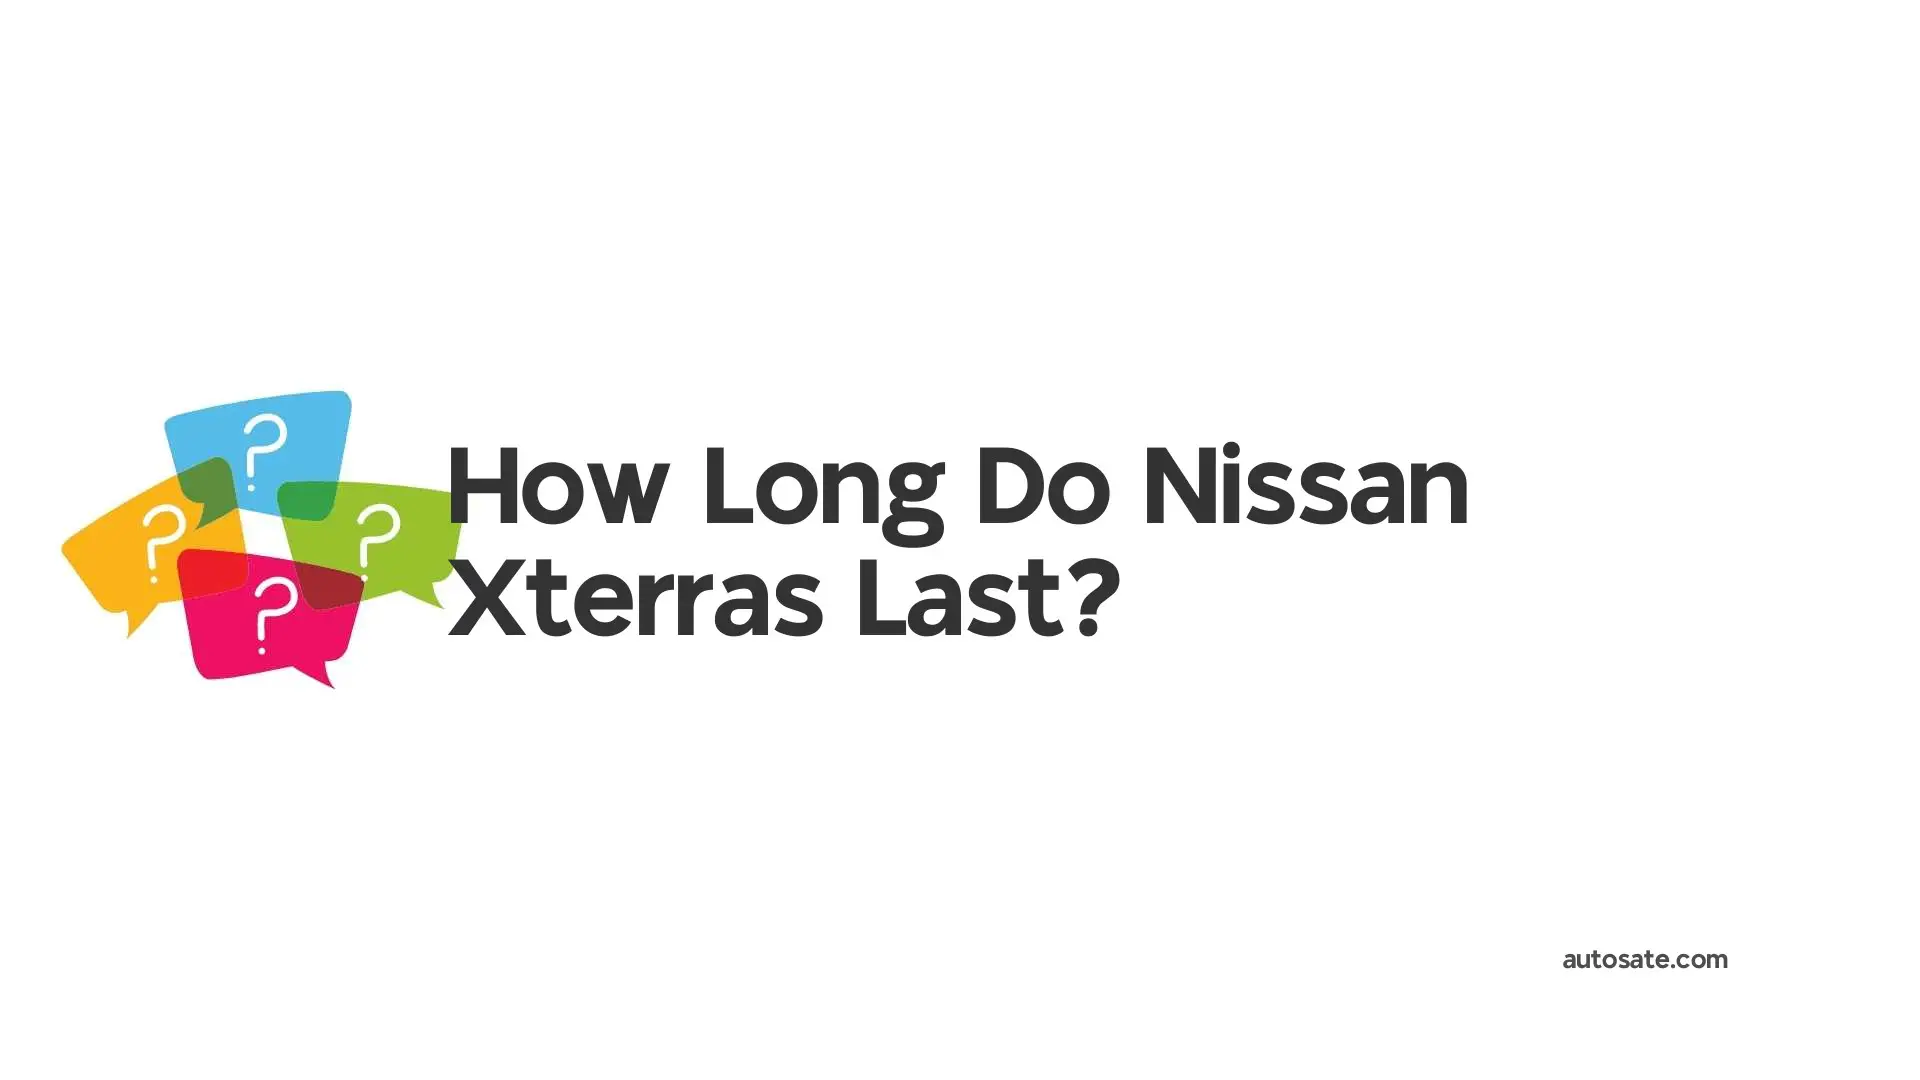 How Long Do Nissan Xterras Last?